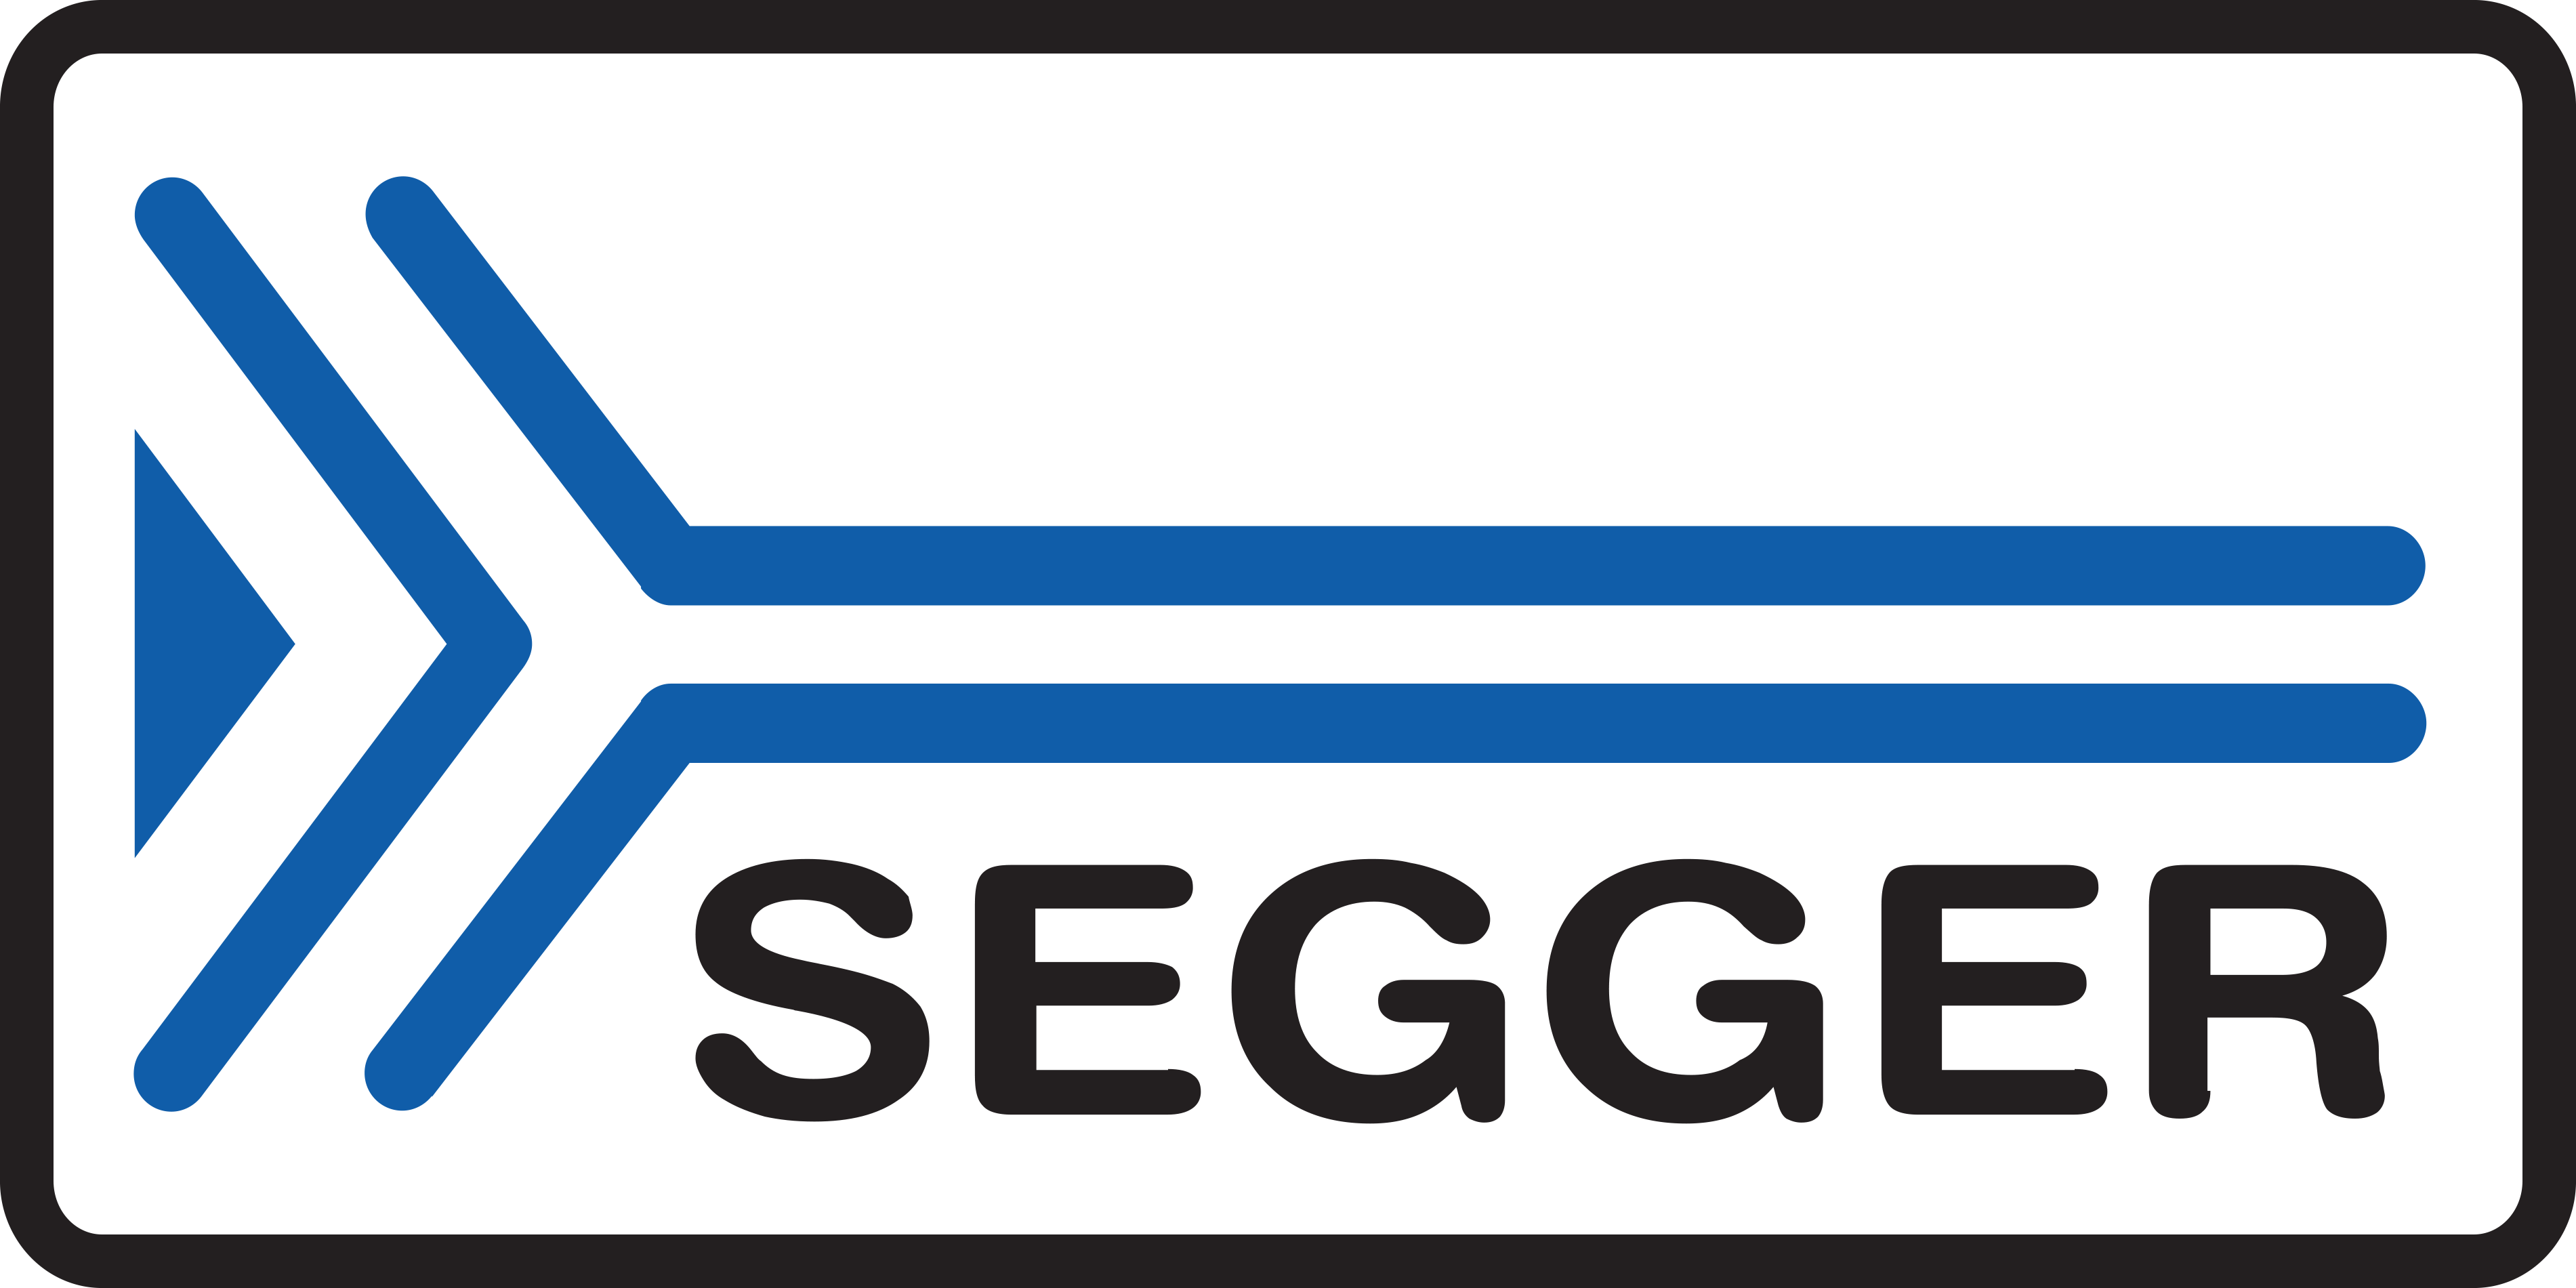 Segger Microcontroller Systems LOGO